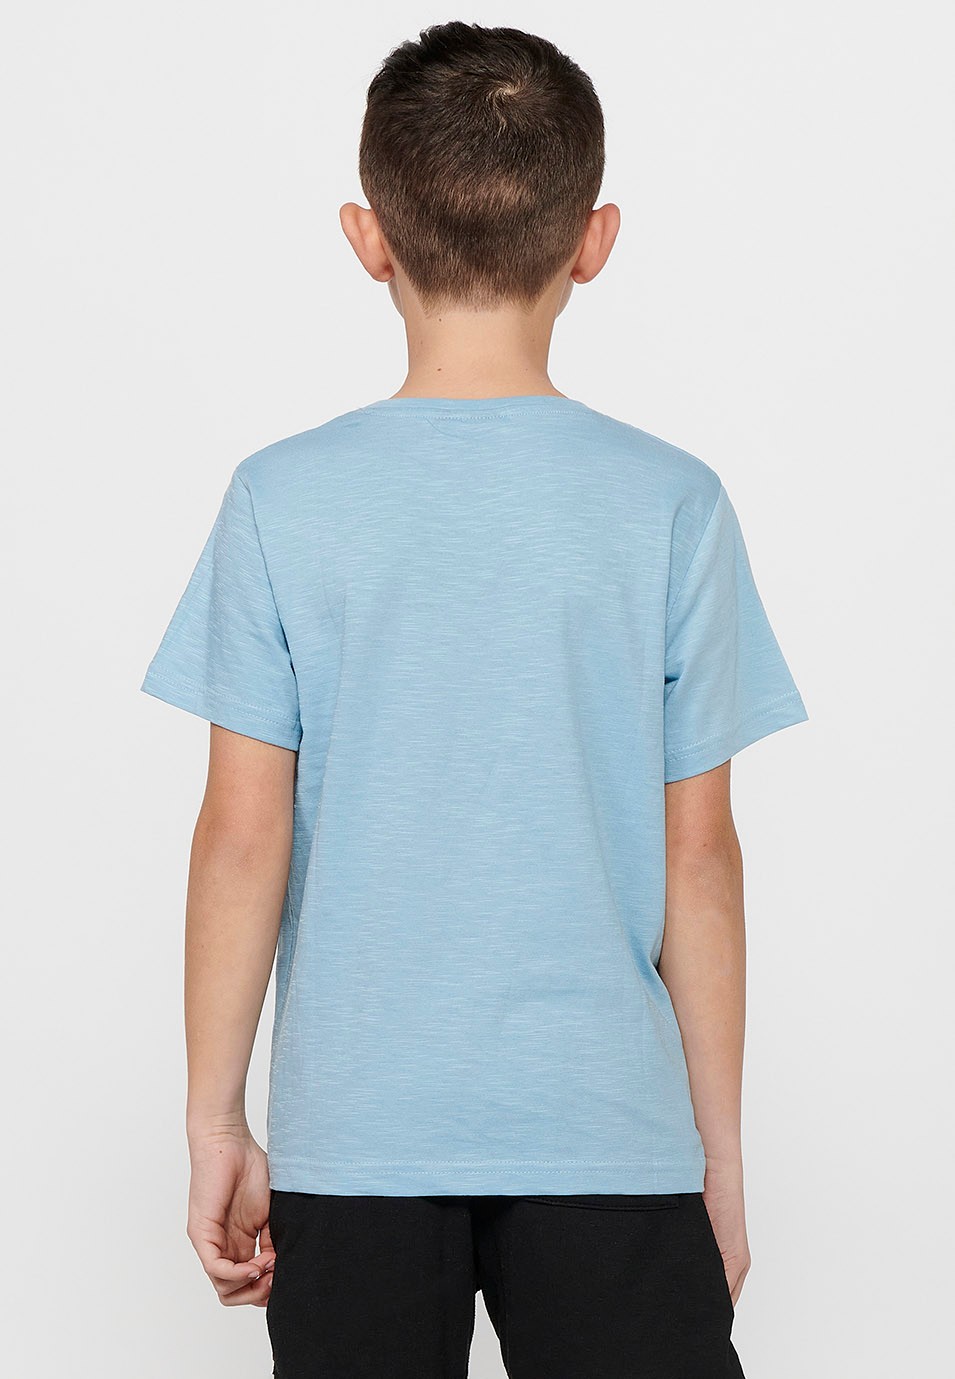 Samarreta de màniga curta de Cotó i coll rodó. Estampat davanter Color Blau celeste per a Nen 5